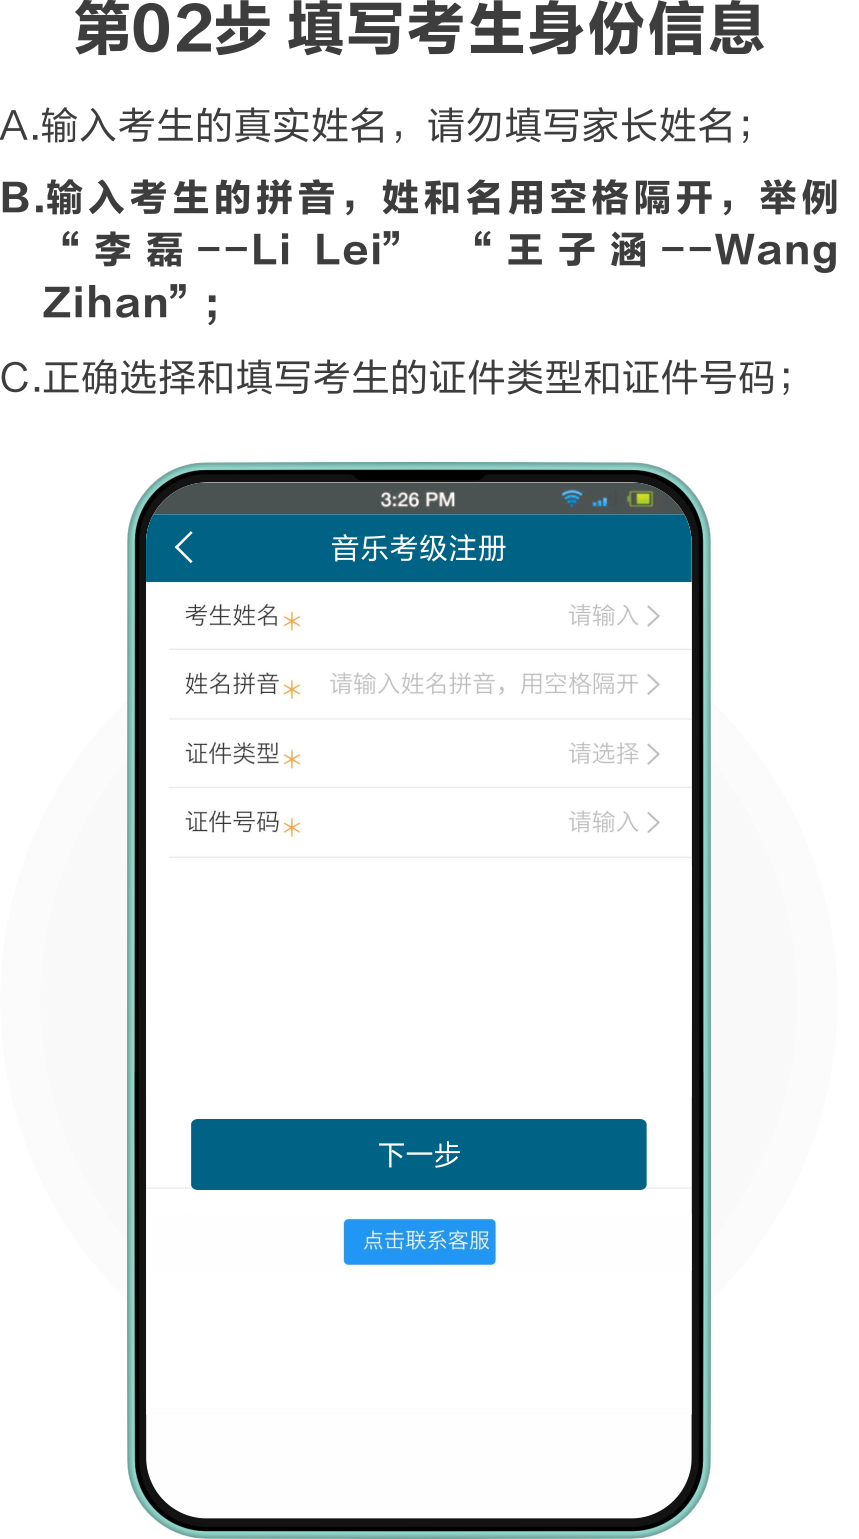 中国音协音乐考级安徽考区视频考级注册操作指南